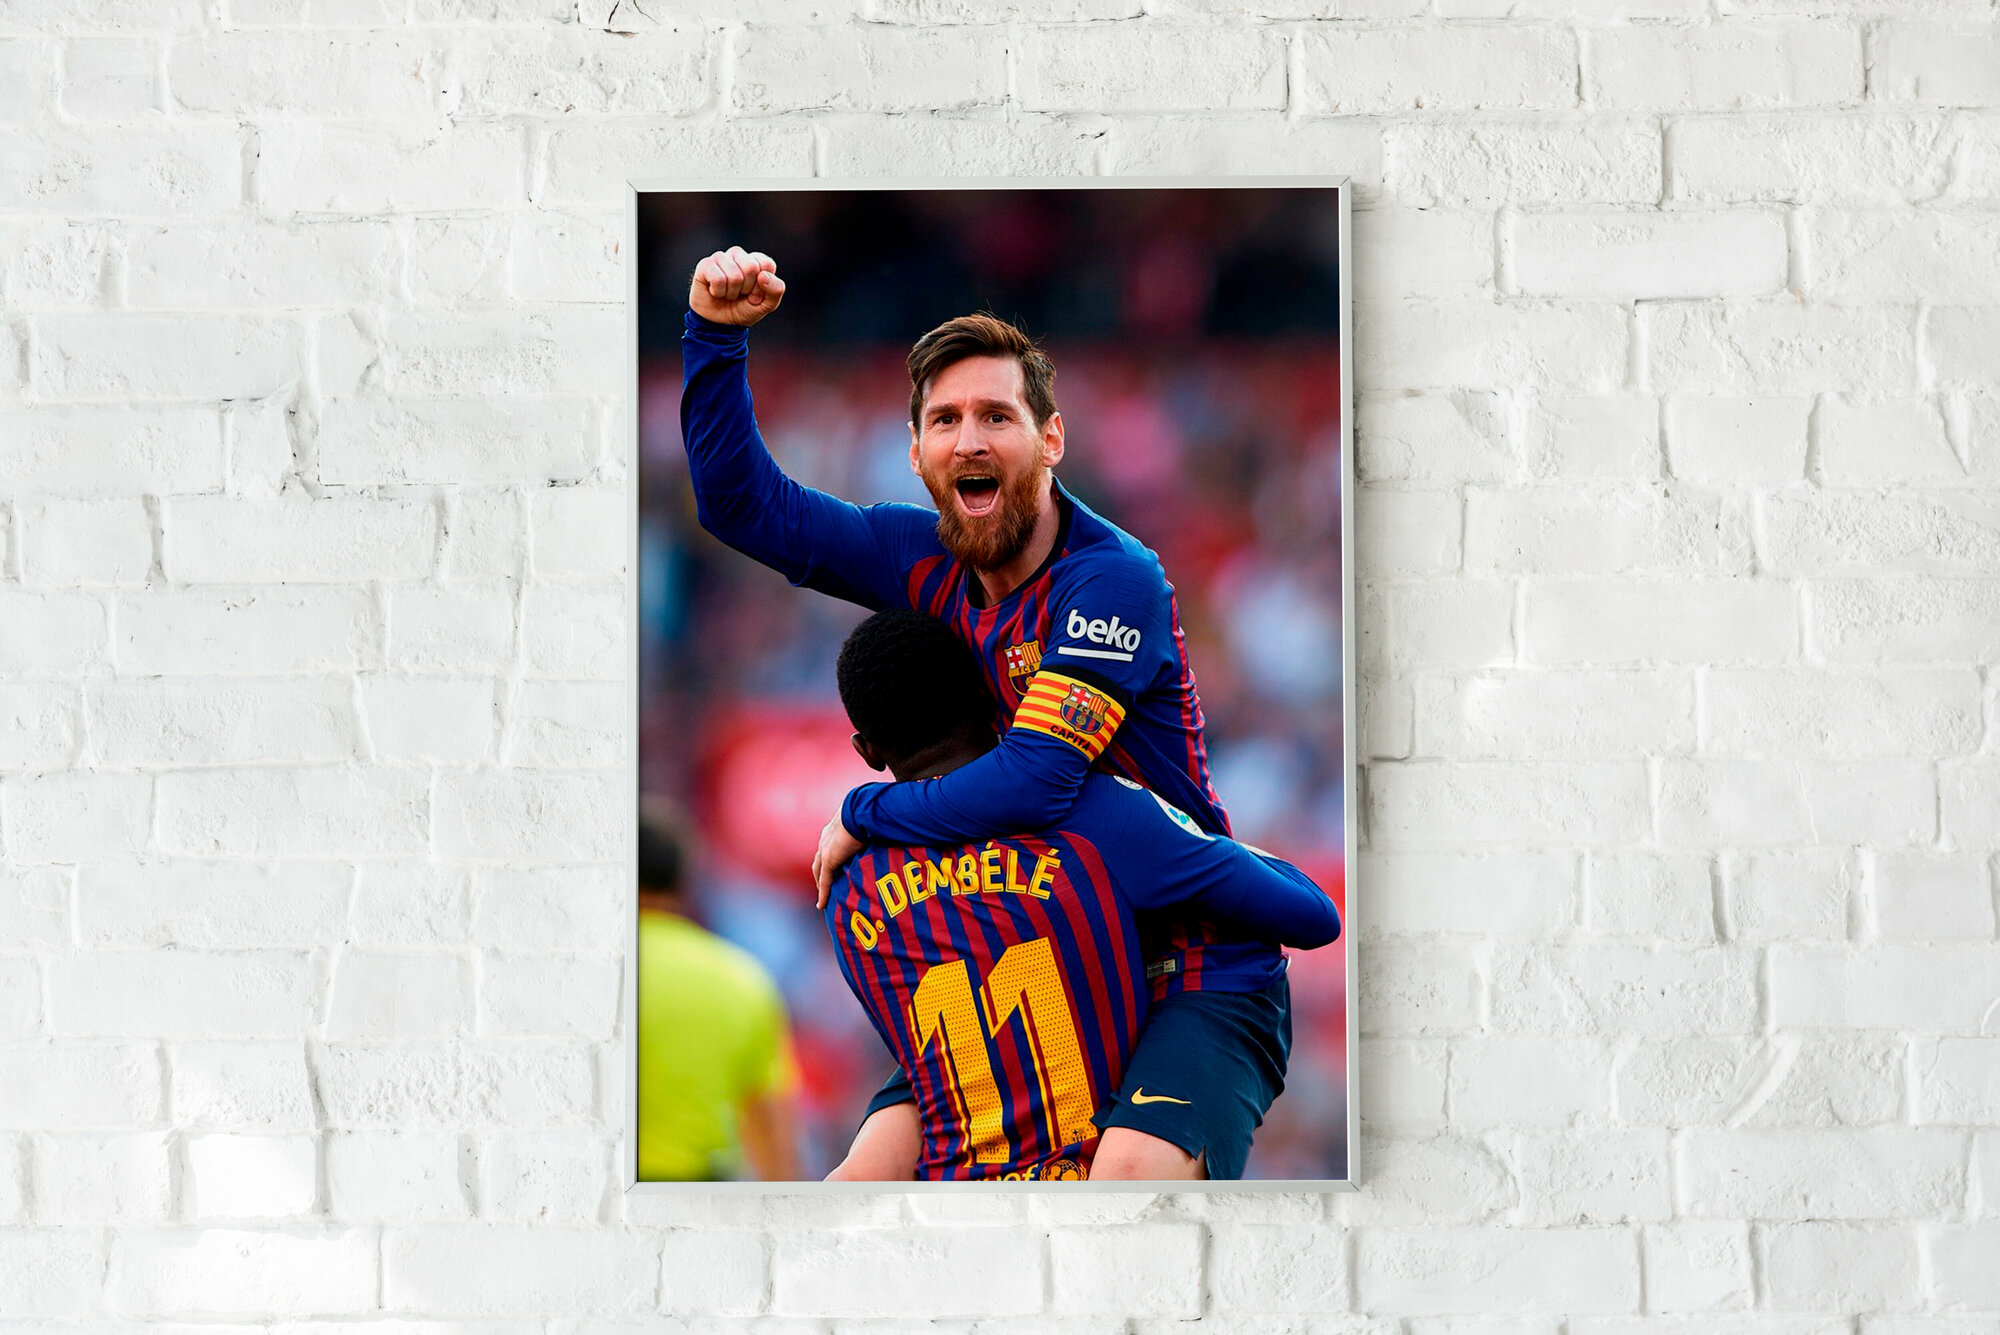 Плакат без рамы Лионель Месси/Leo Messi/футбольный постер/ Плакат на стену 21х30 см / Постер формата А4